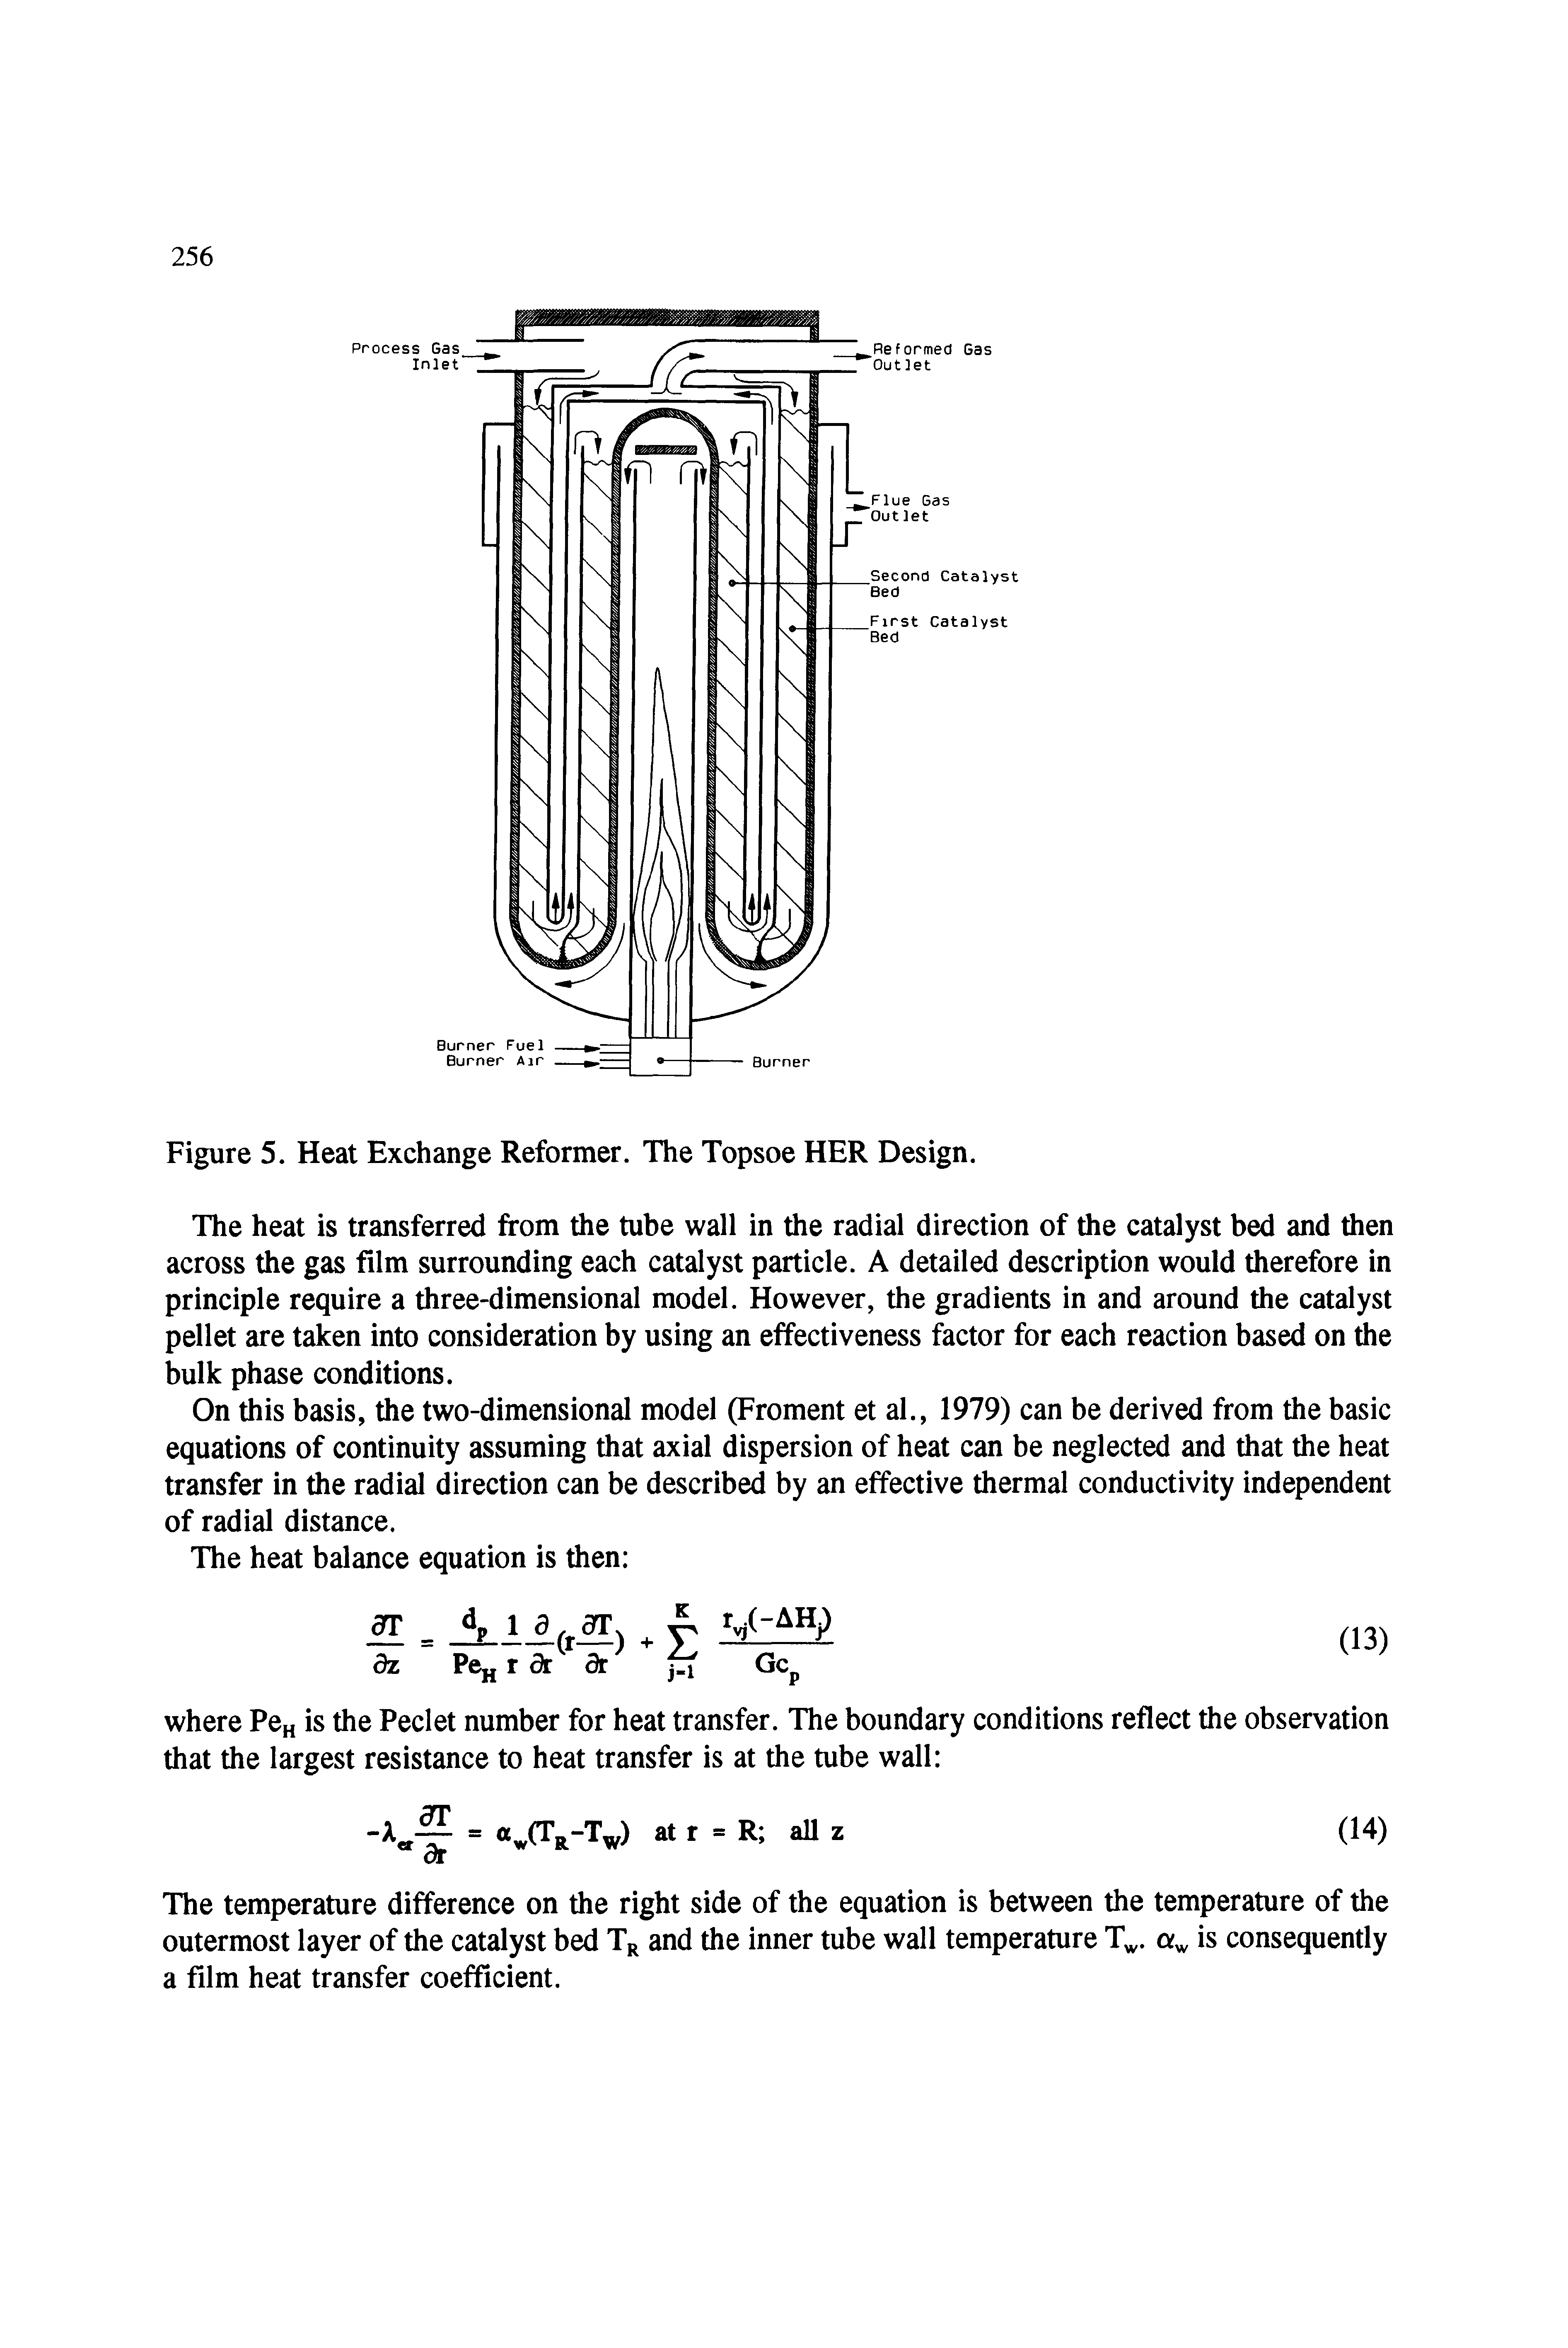 Figure 5. Heat Exchange Reformer. The Topsoe HER Design.